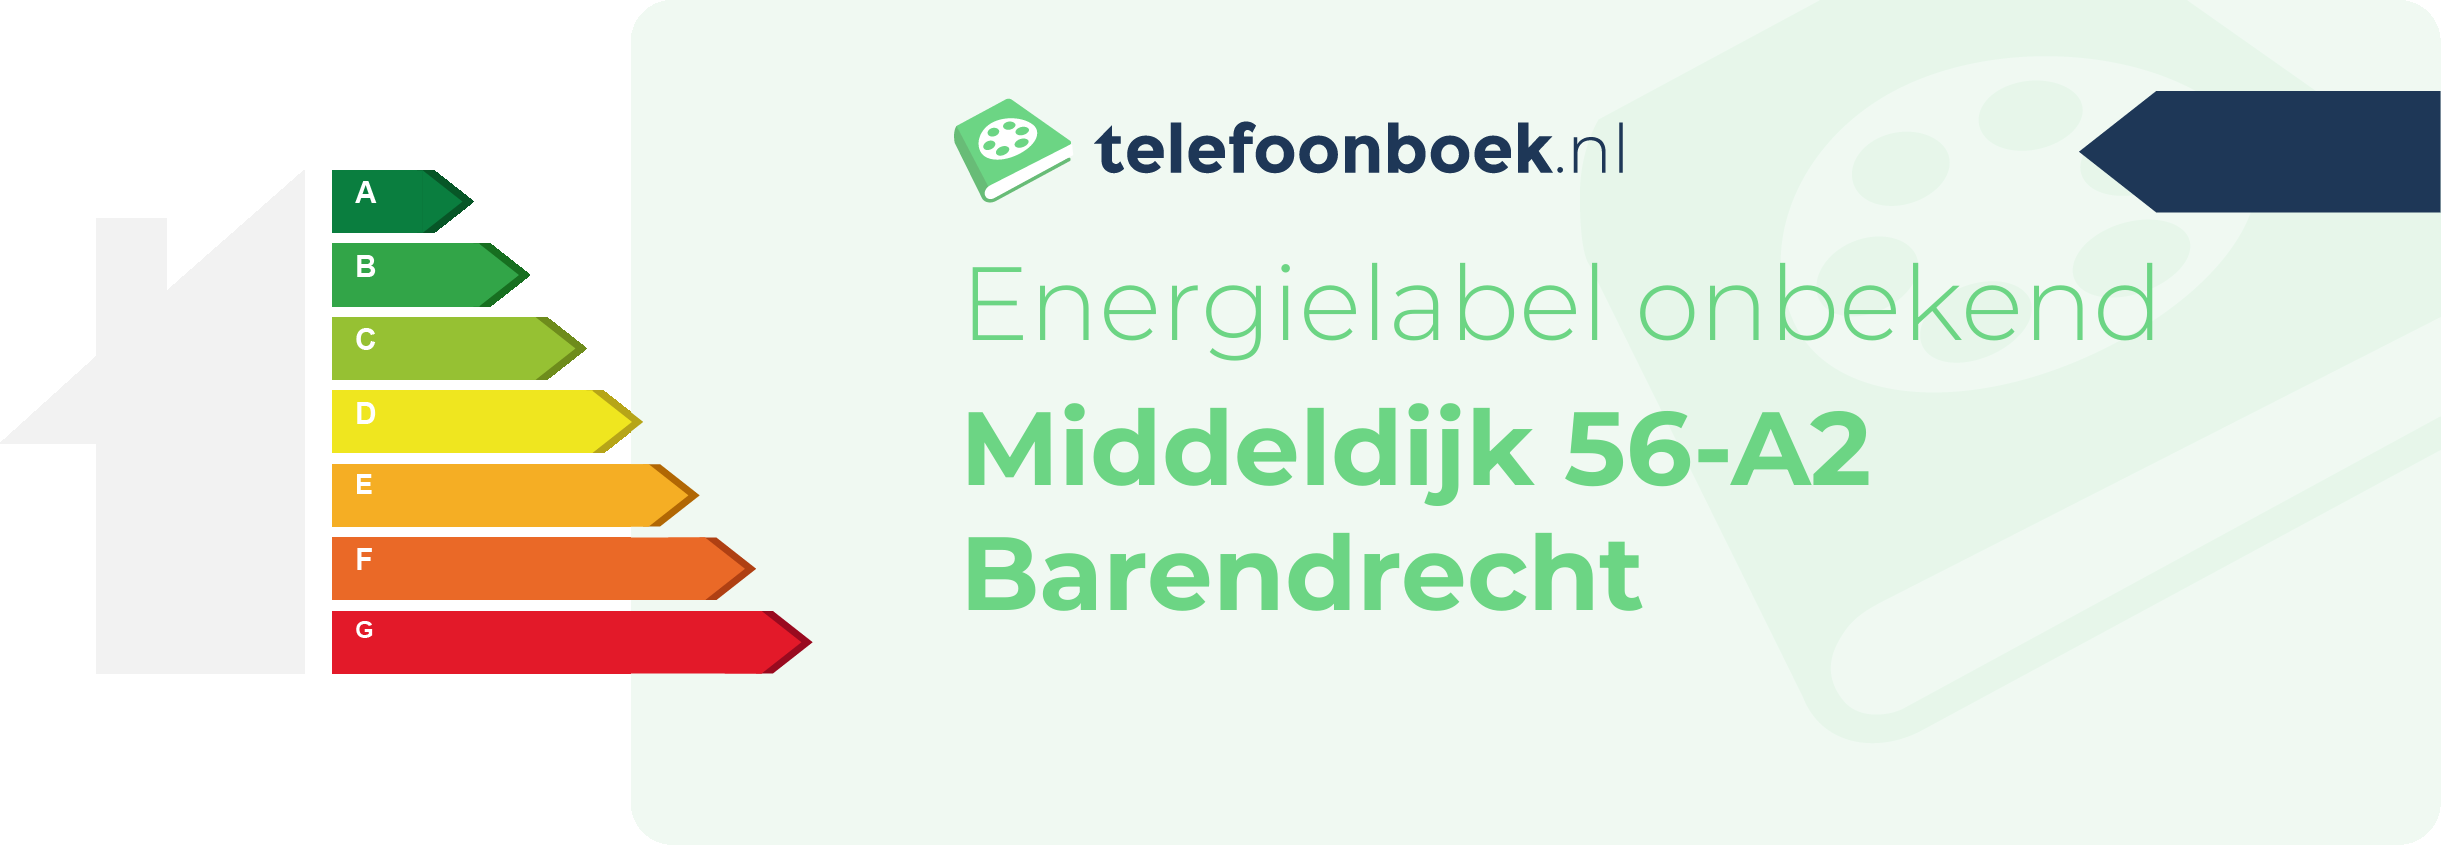 Energielabel Middeldijk 56-A2 Barendrecht